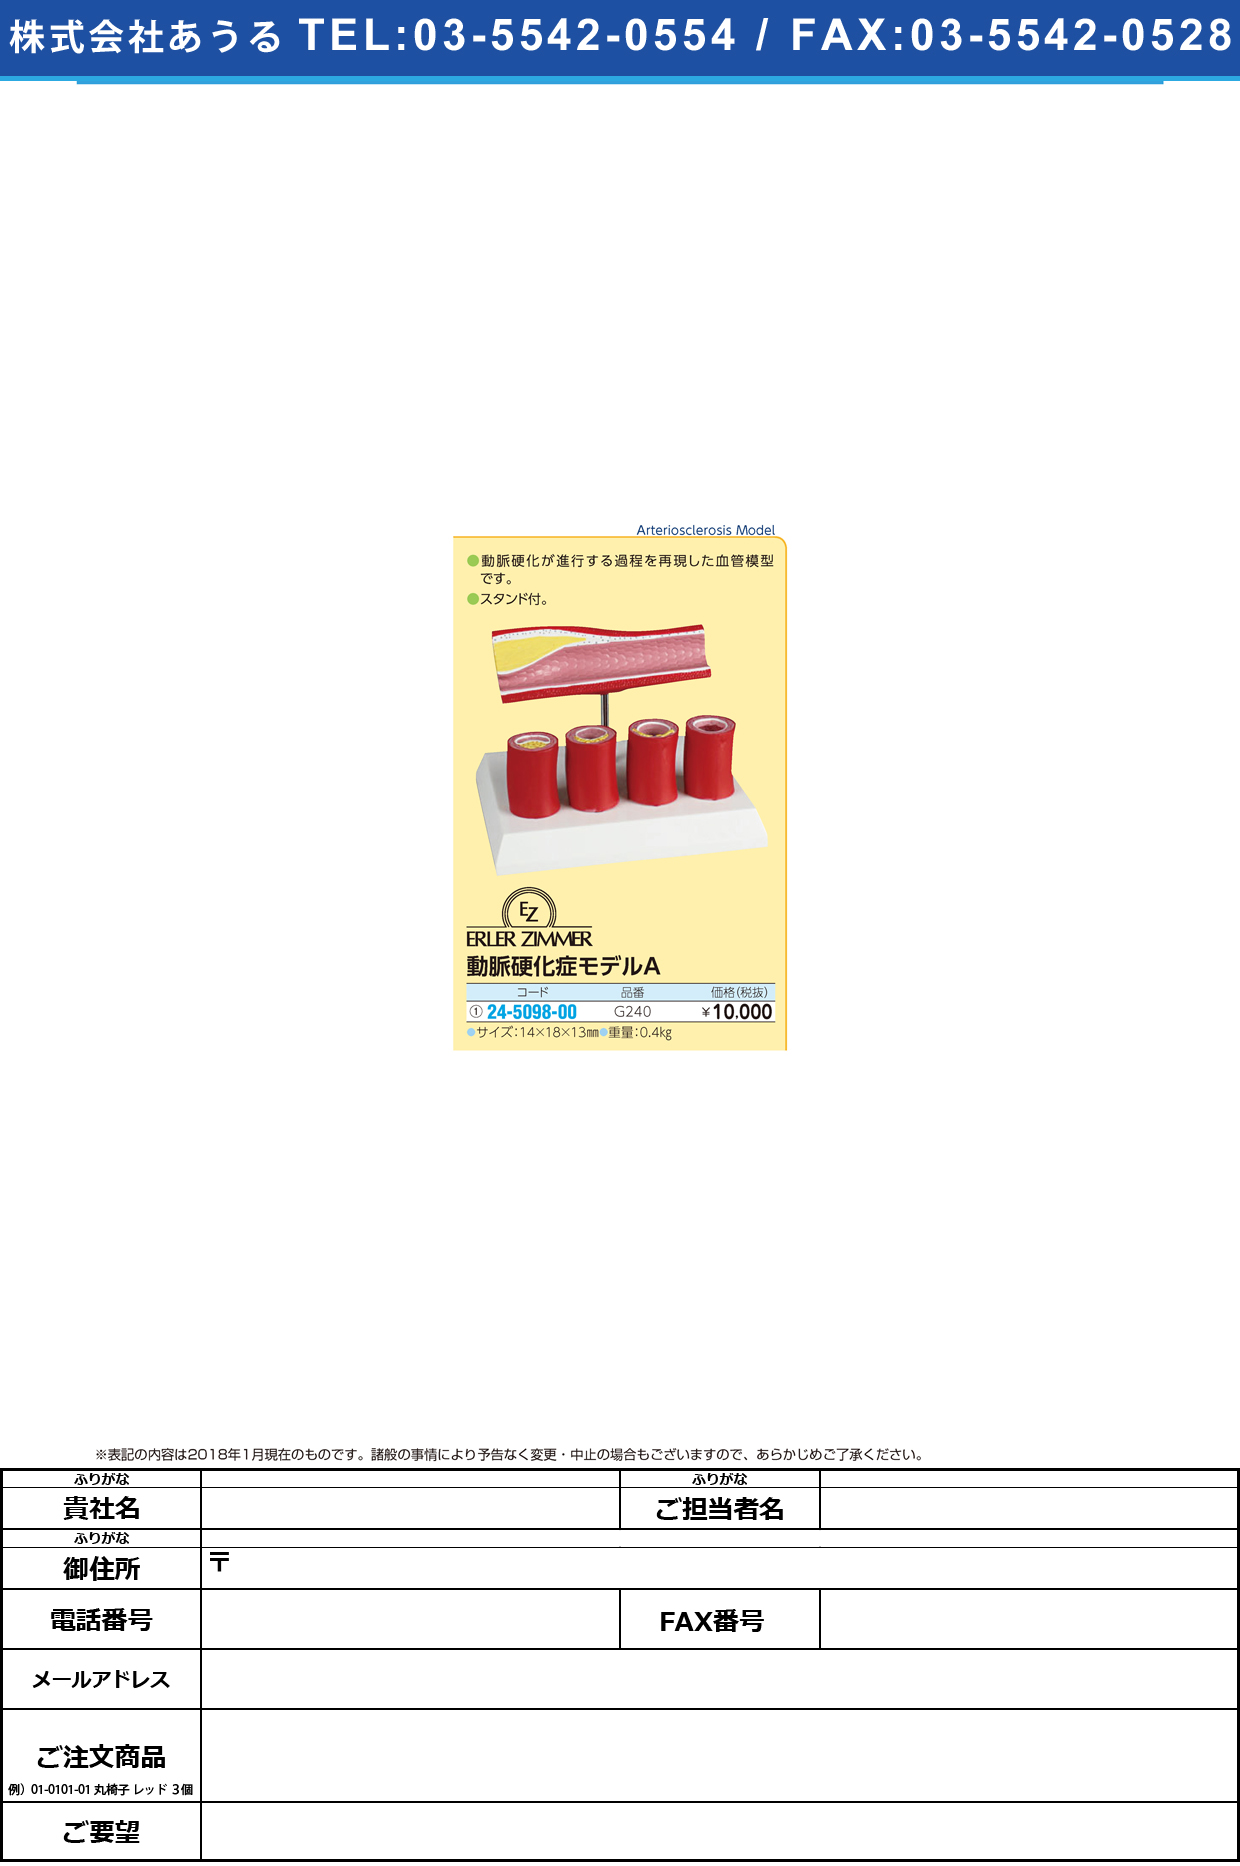 (24-5098-00)動脈硬化症モデルＡ G240 ﾄﾞｳﾐｬｸｺｳｶｼｮｳﾓﾃﾞﾙA(エルラージーマー社)【1個単位】【2018年カタログ商品】